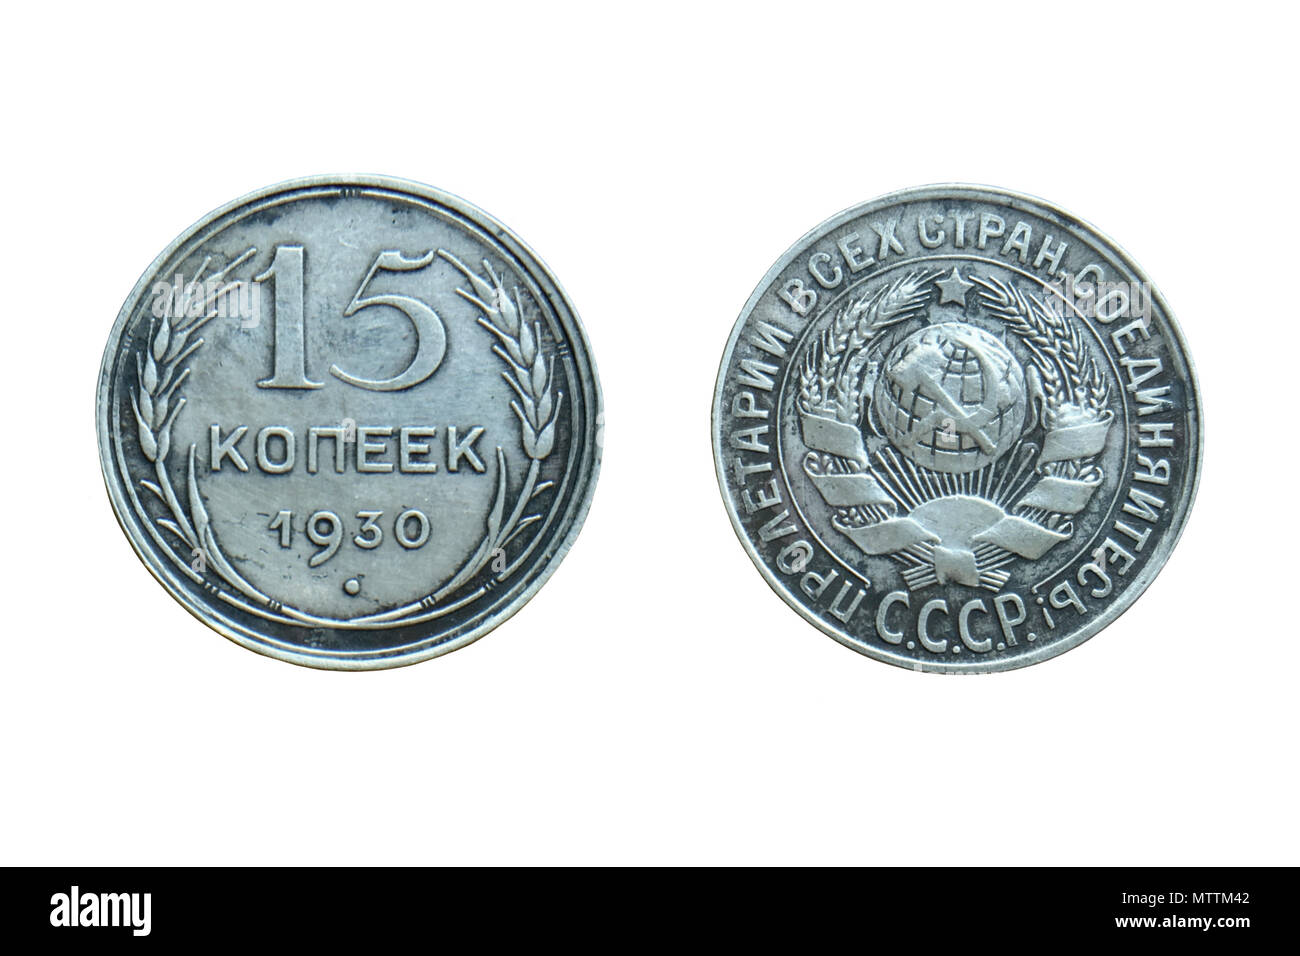 Unione Sovietica (Russia comunista) argento vecchia moneta 15 kopeks 1930 Foto Stock